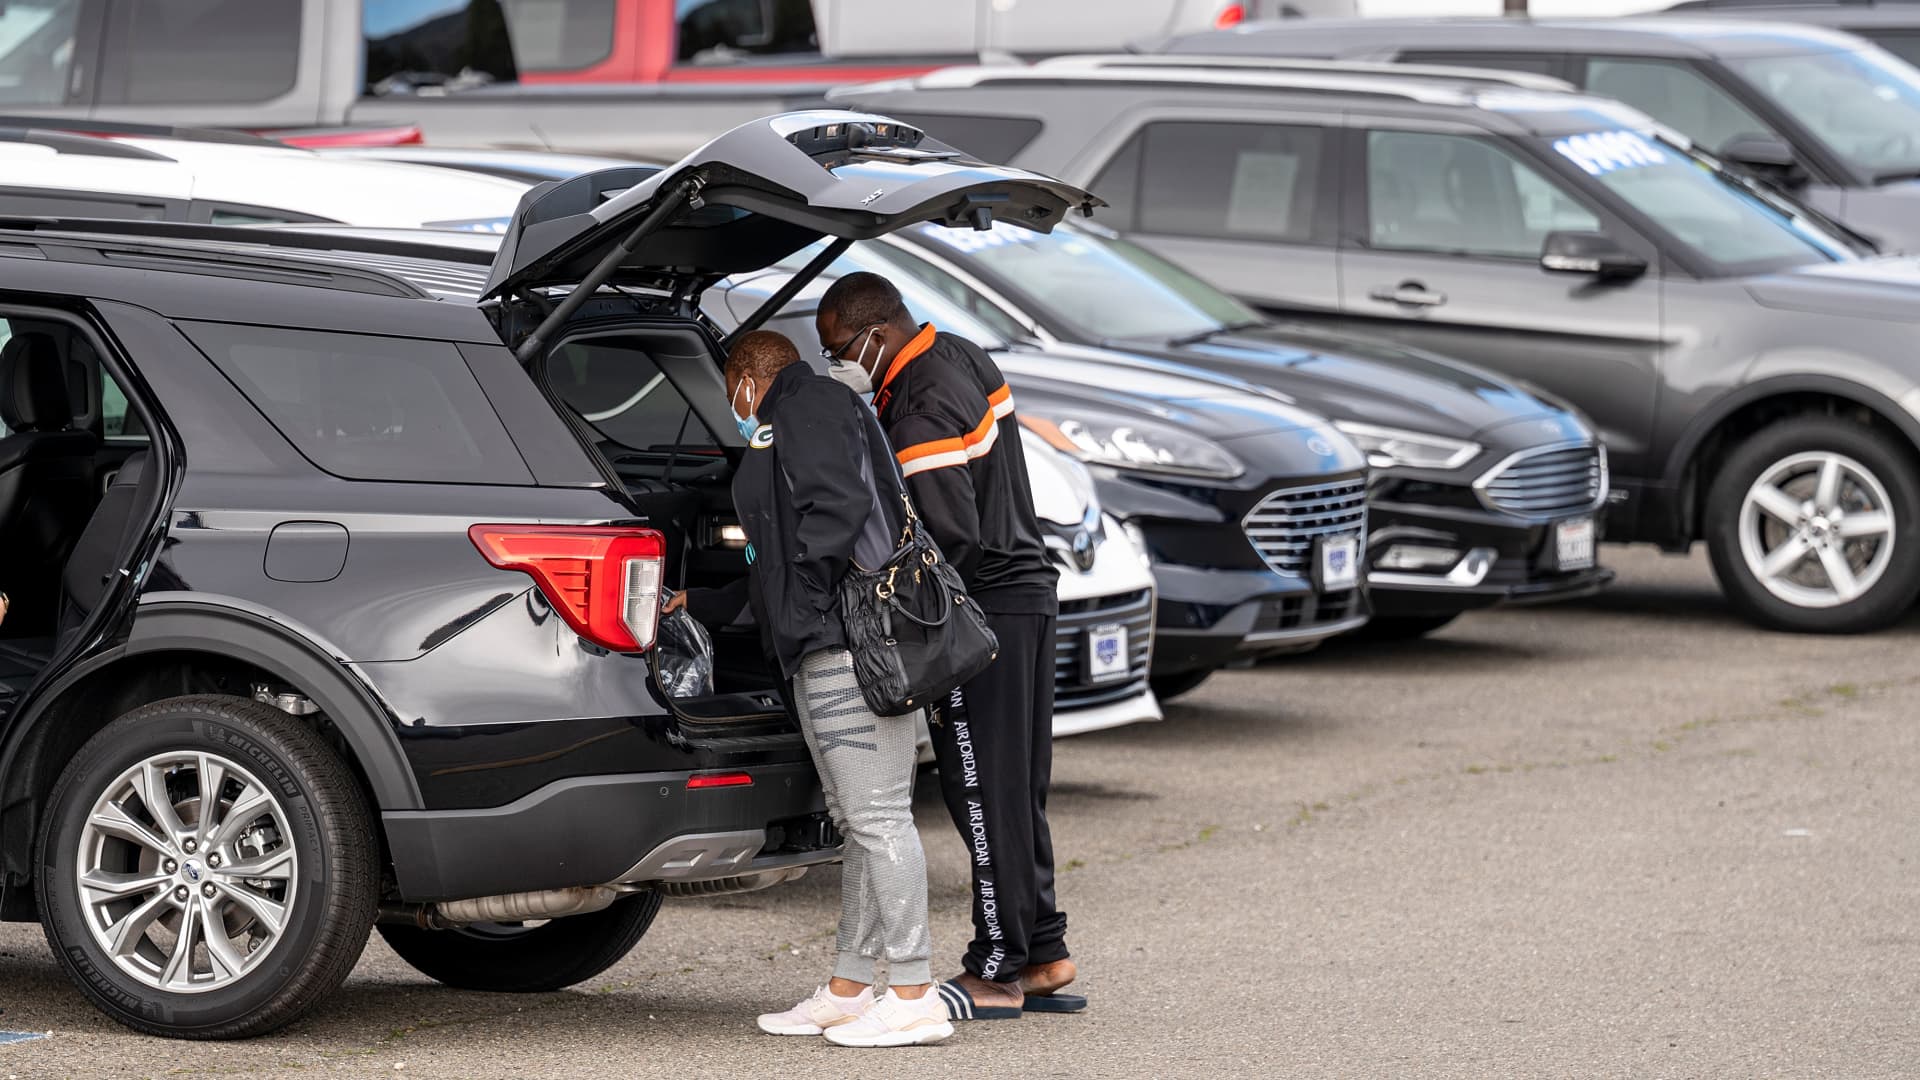 Producenci pojazdów elektrycznych pracują nad włączeniem dealerów samochodowych do swoich przyszłych planów